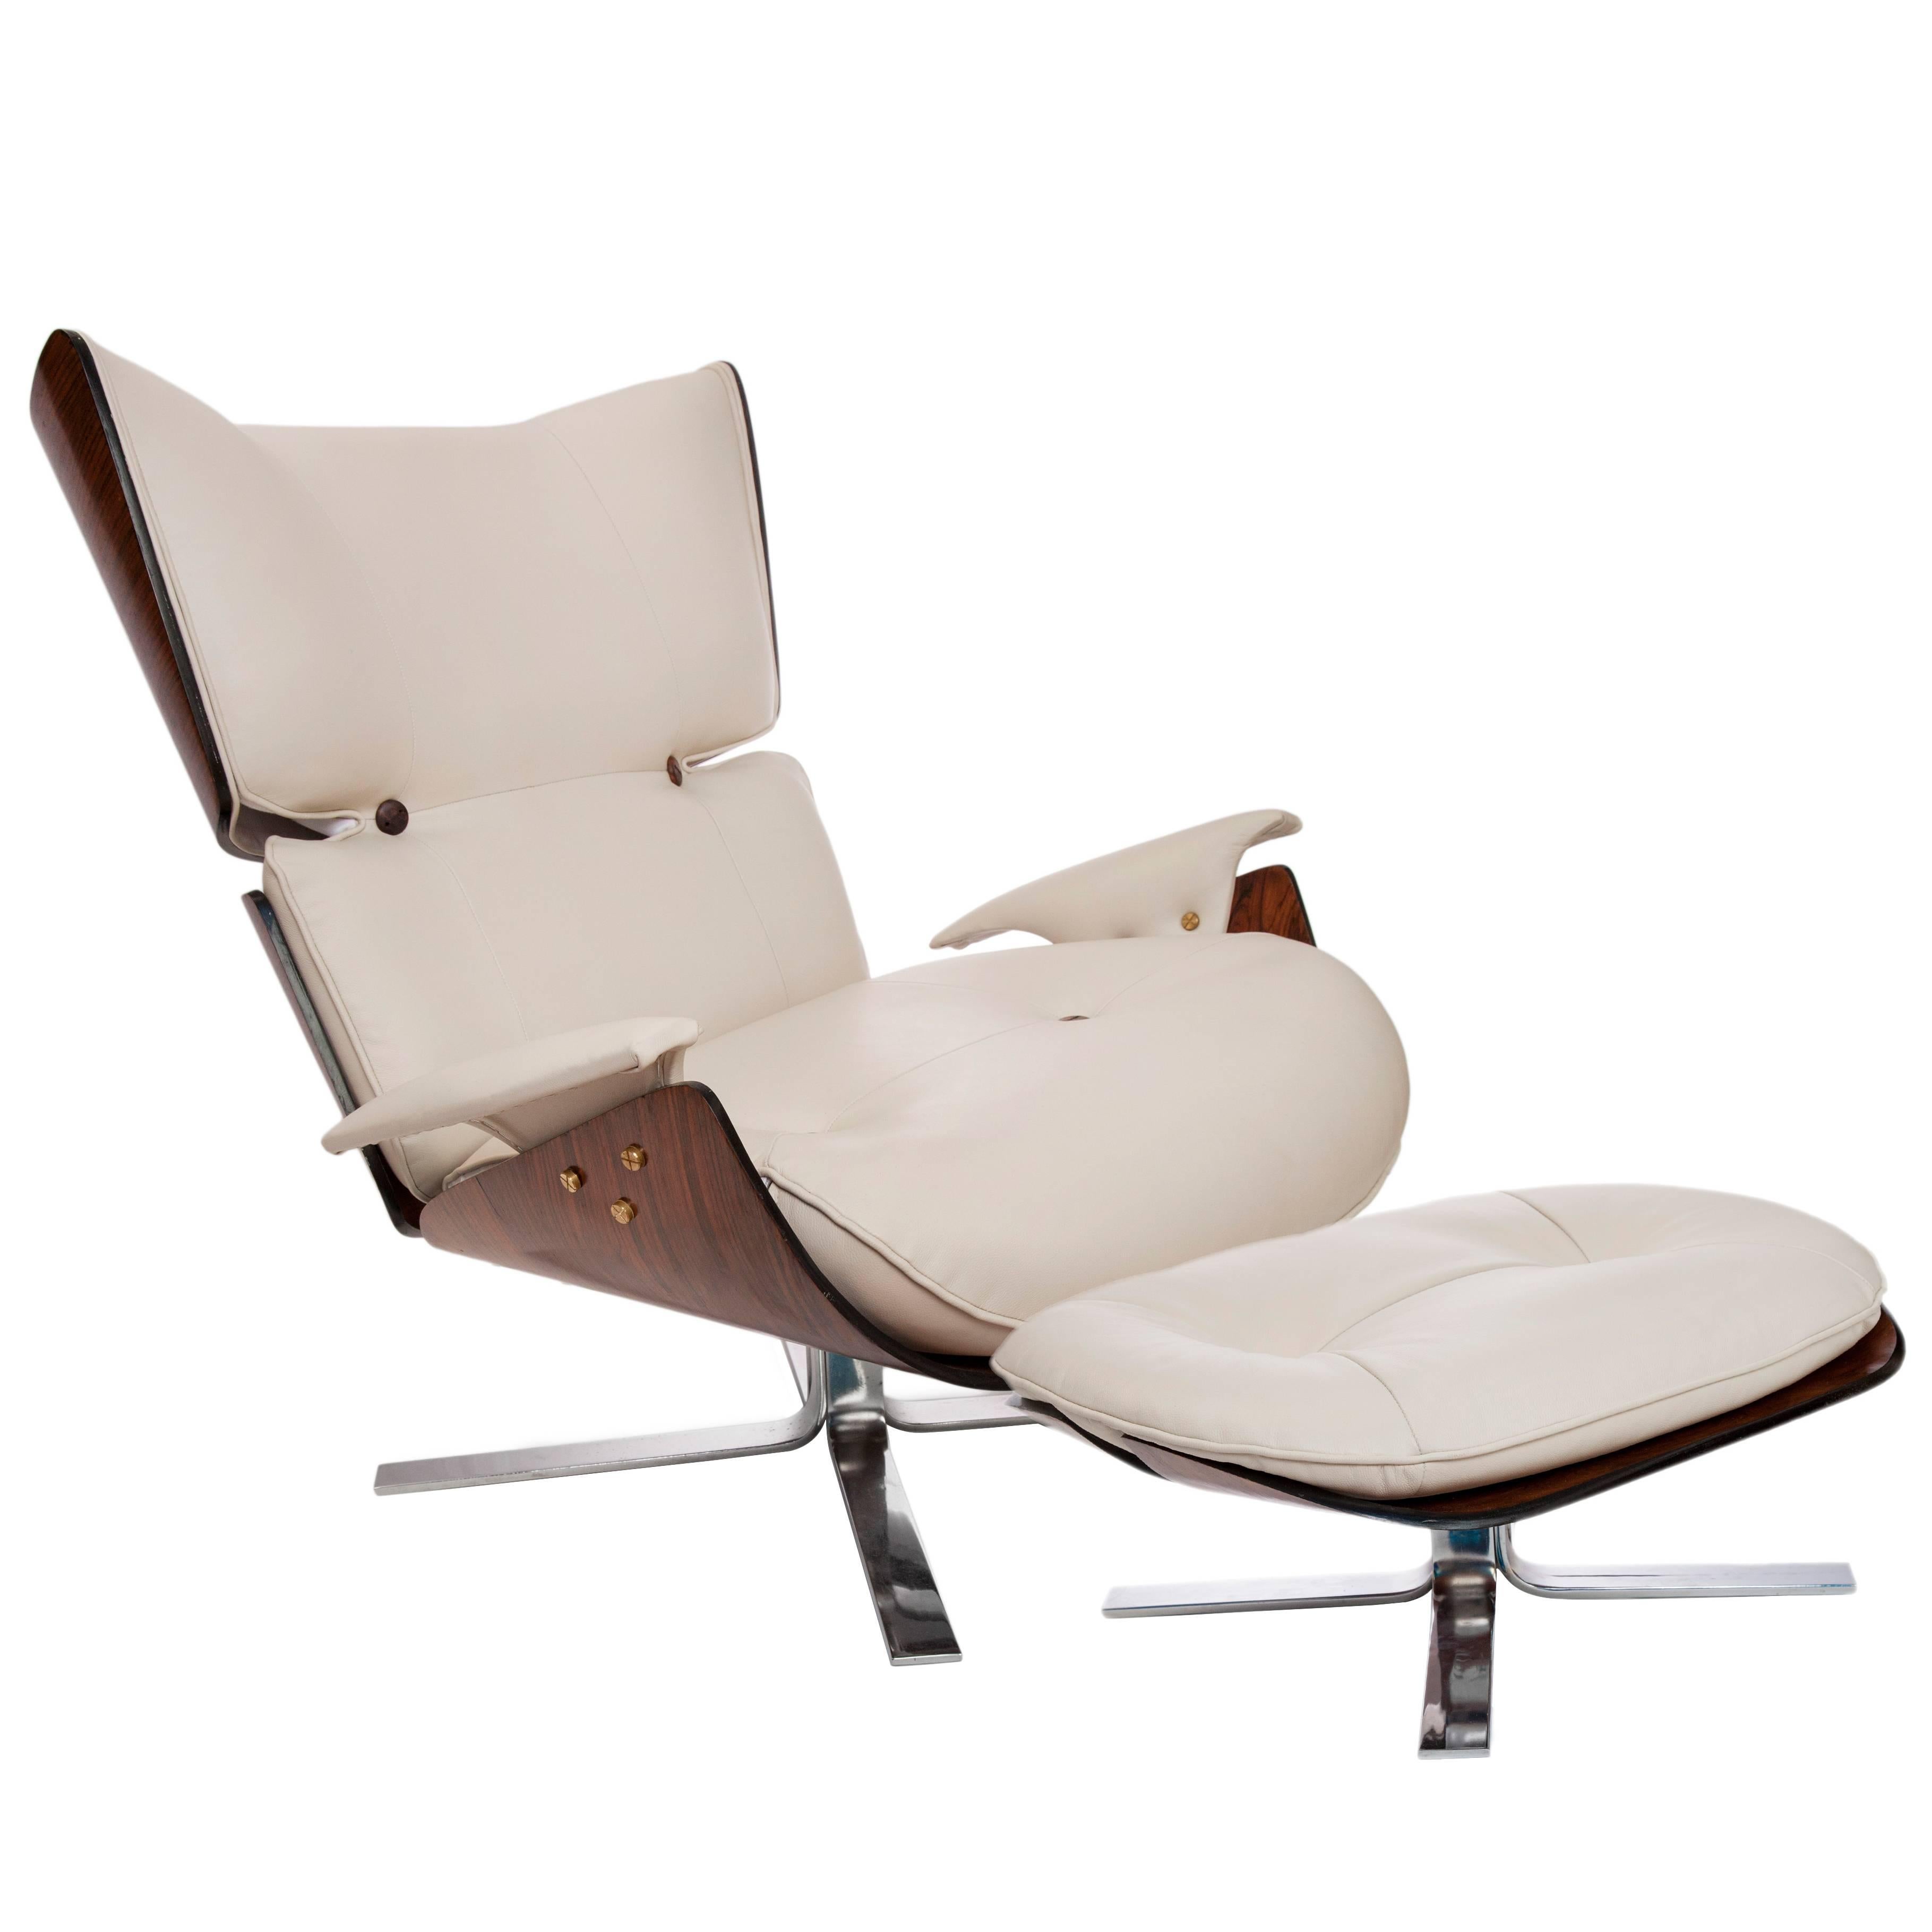 Jorge Zalszupin 'Paulistana' Lounge Chair and Footstool